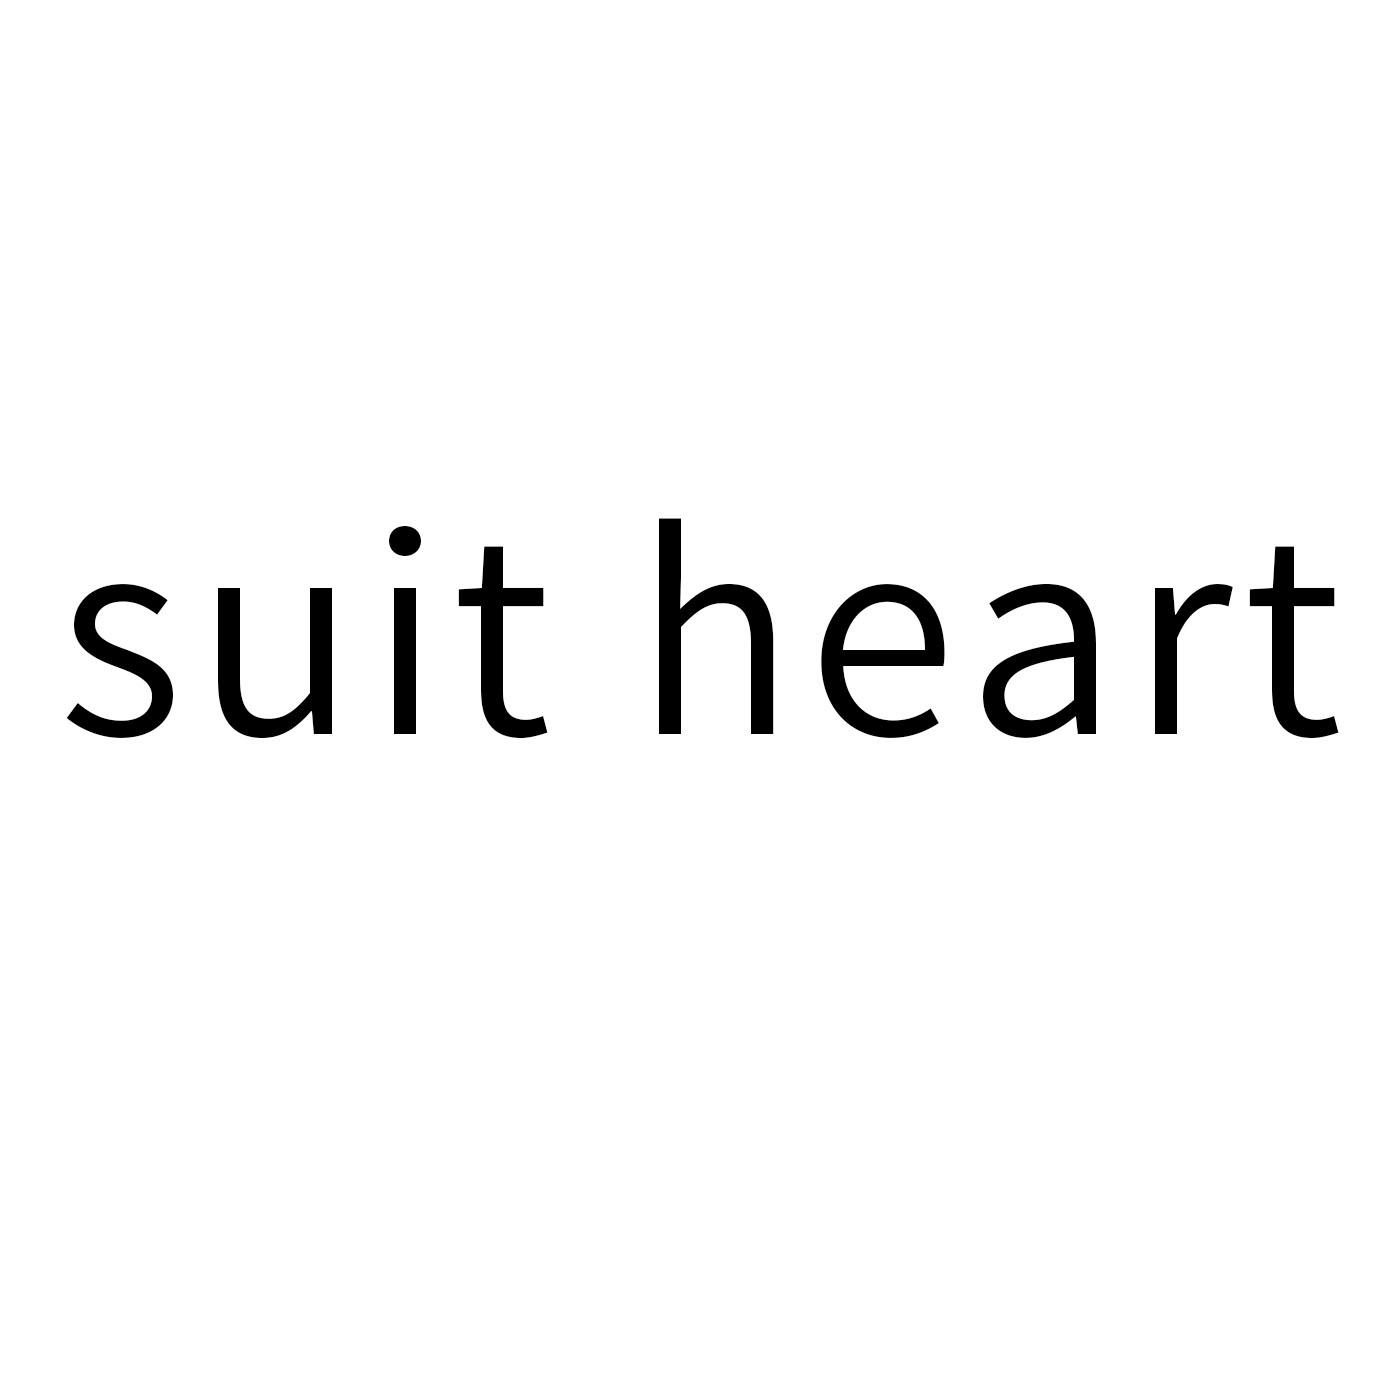 36类-金融保险SUIT HEART商标转让